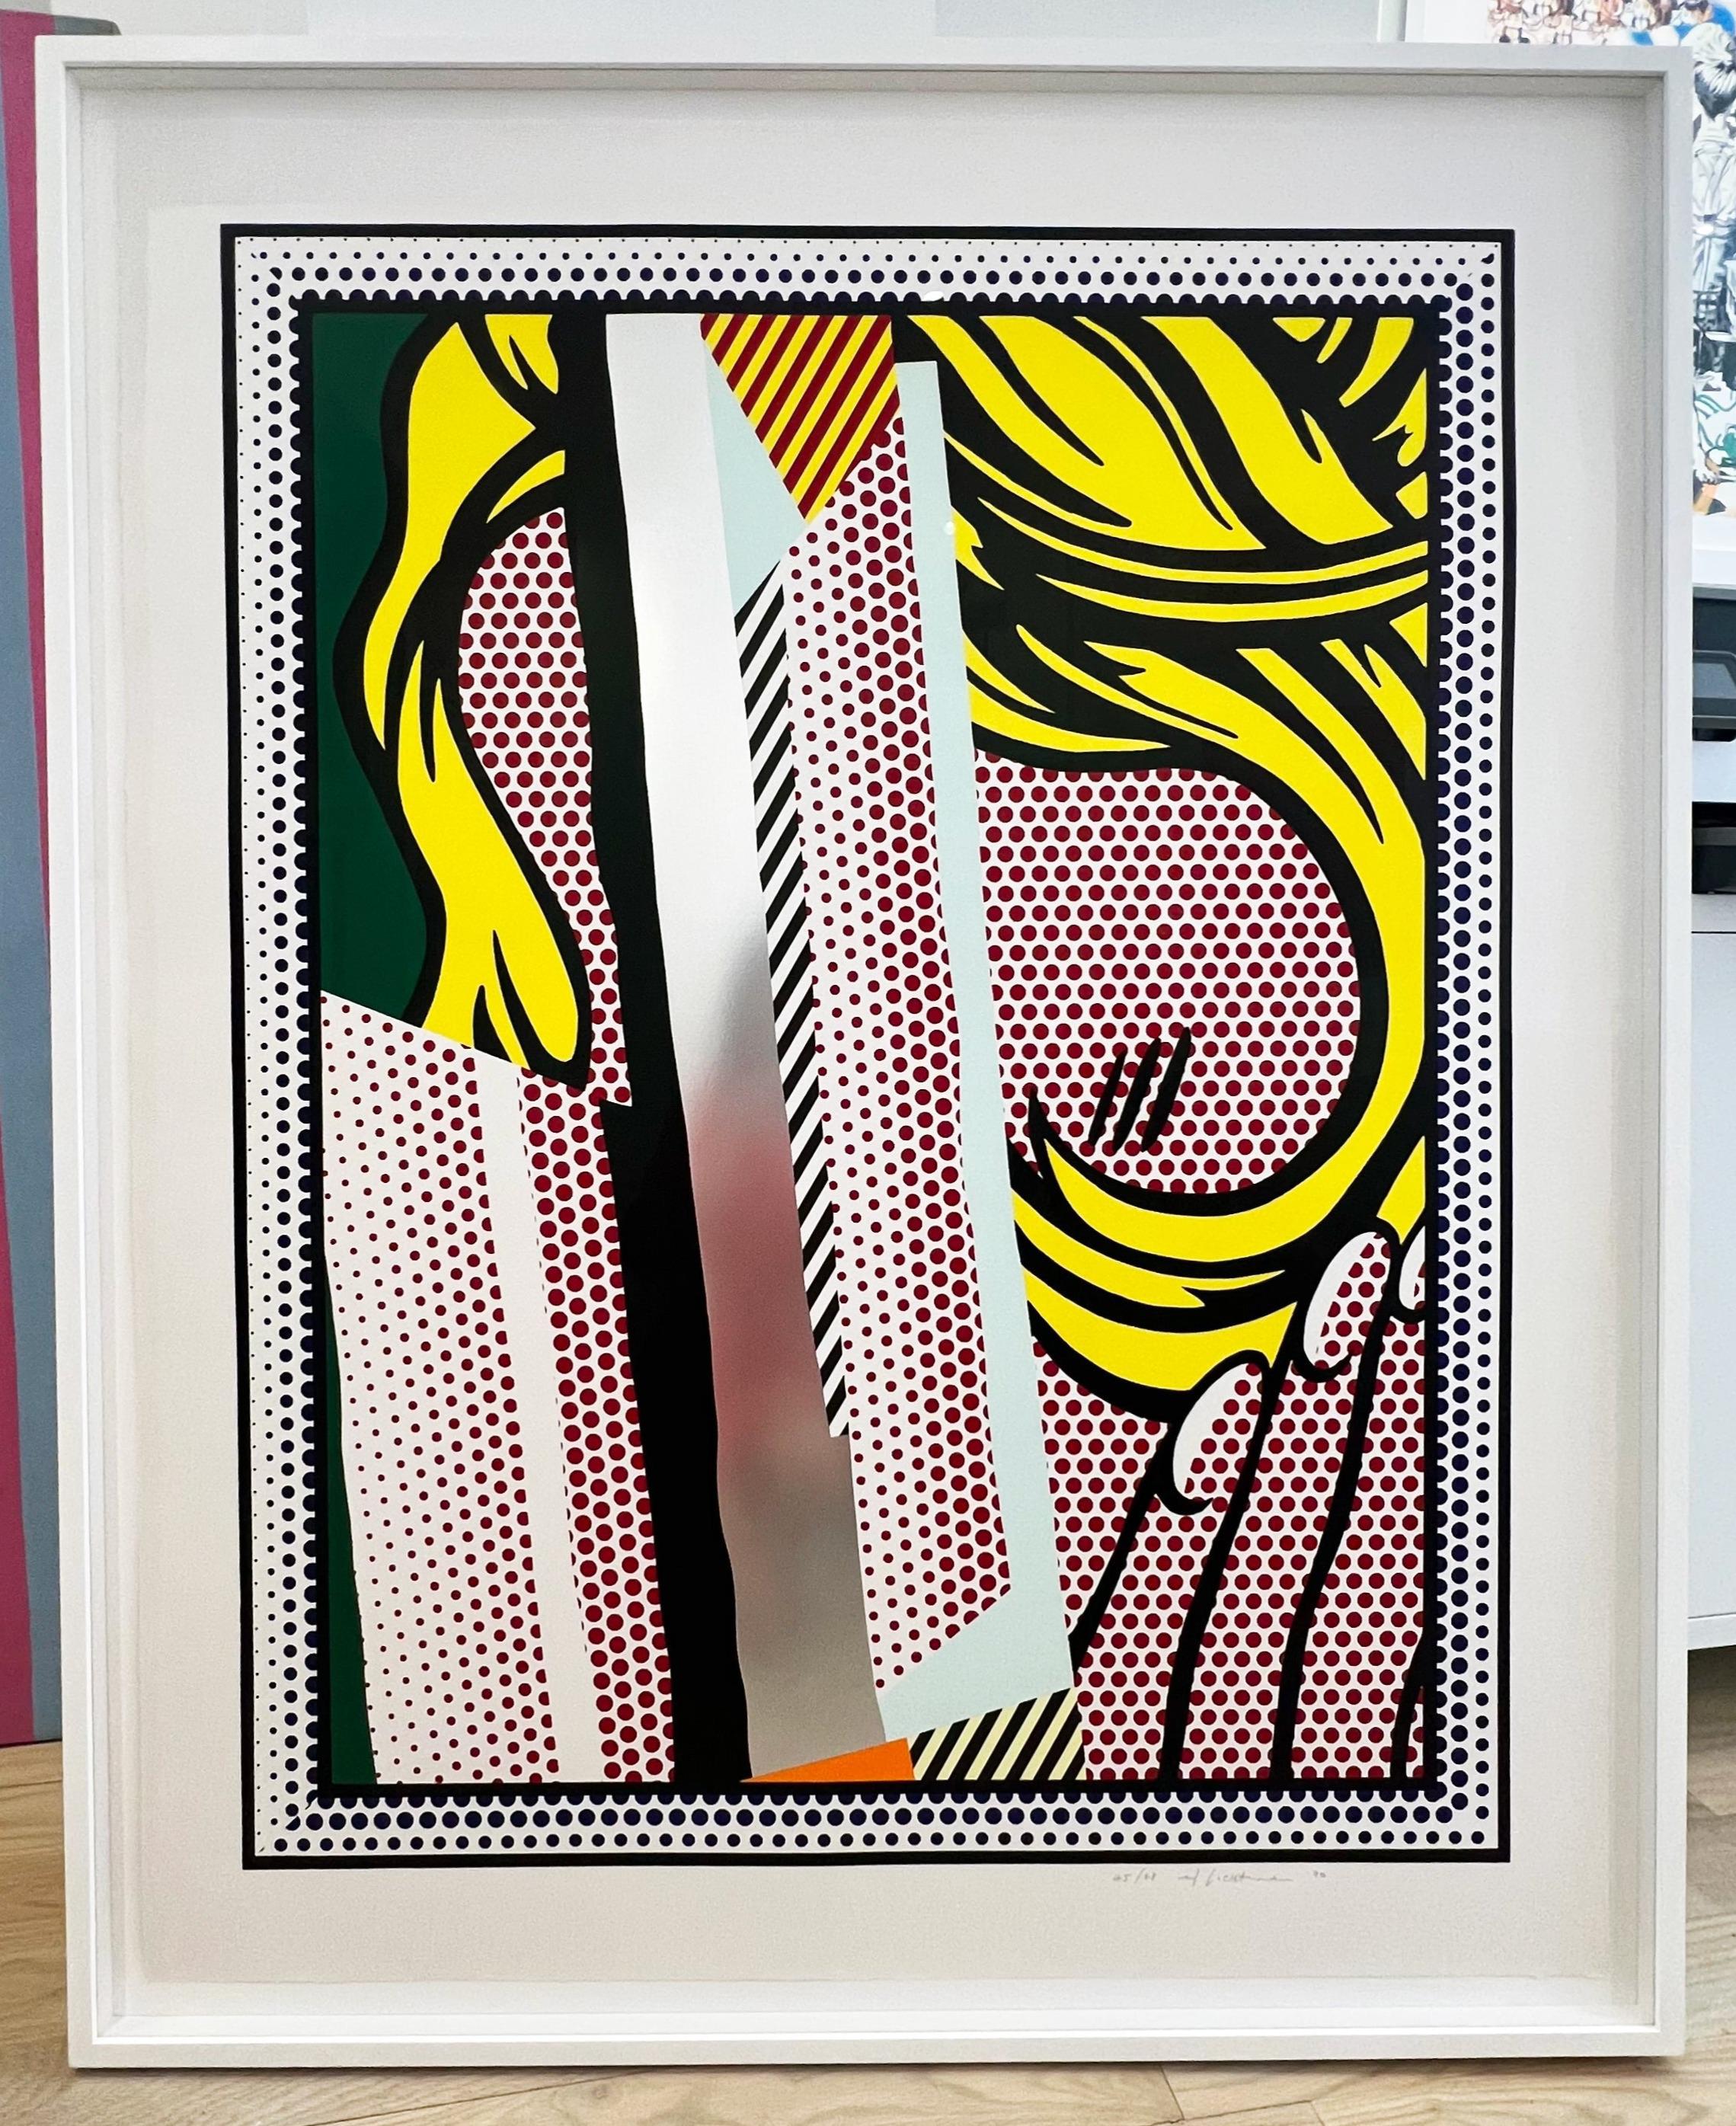 Reflektionen von Haaren – Print von Roy Lichtenstein